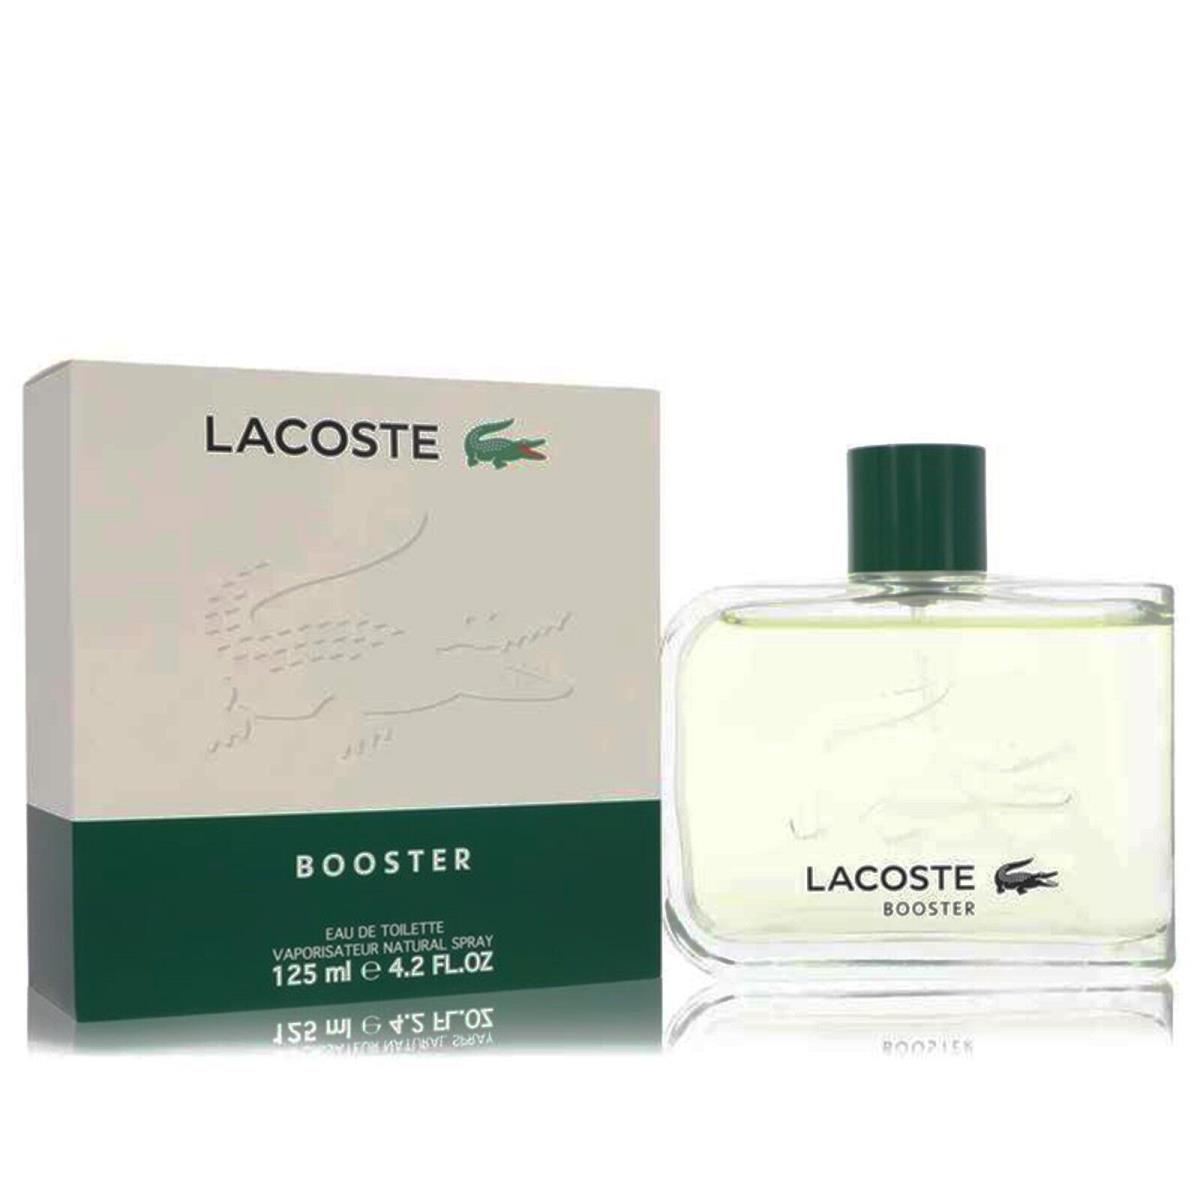 Booster Cologne by Lacoste Men Perfume Eau De Toilette 4.2 oz Edt Spray 125 ml